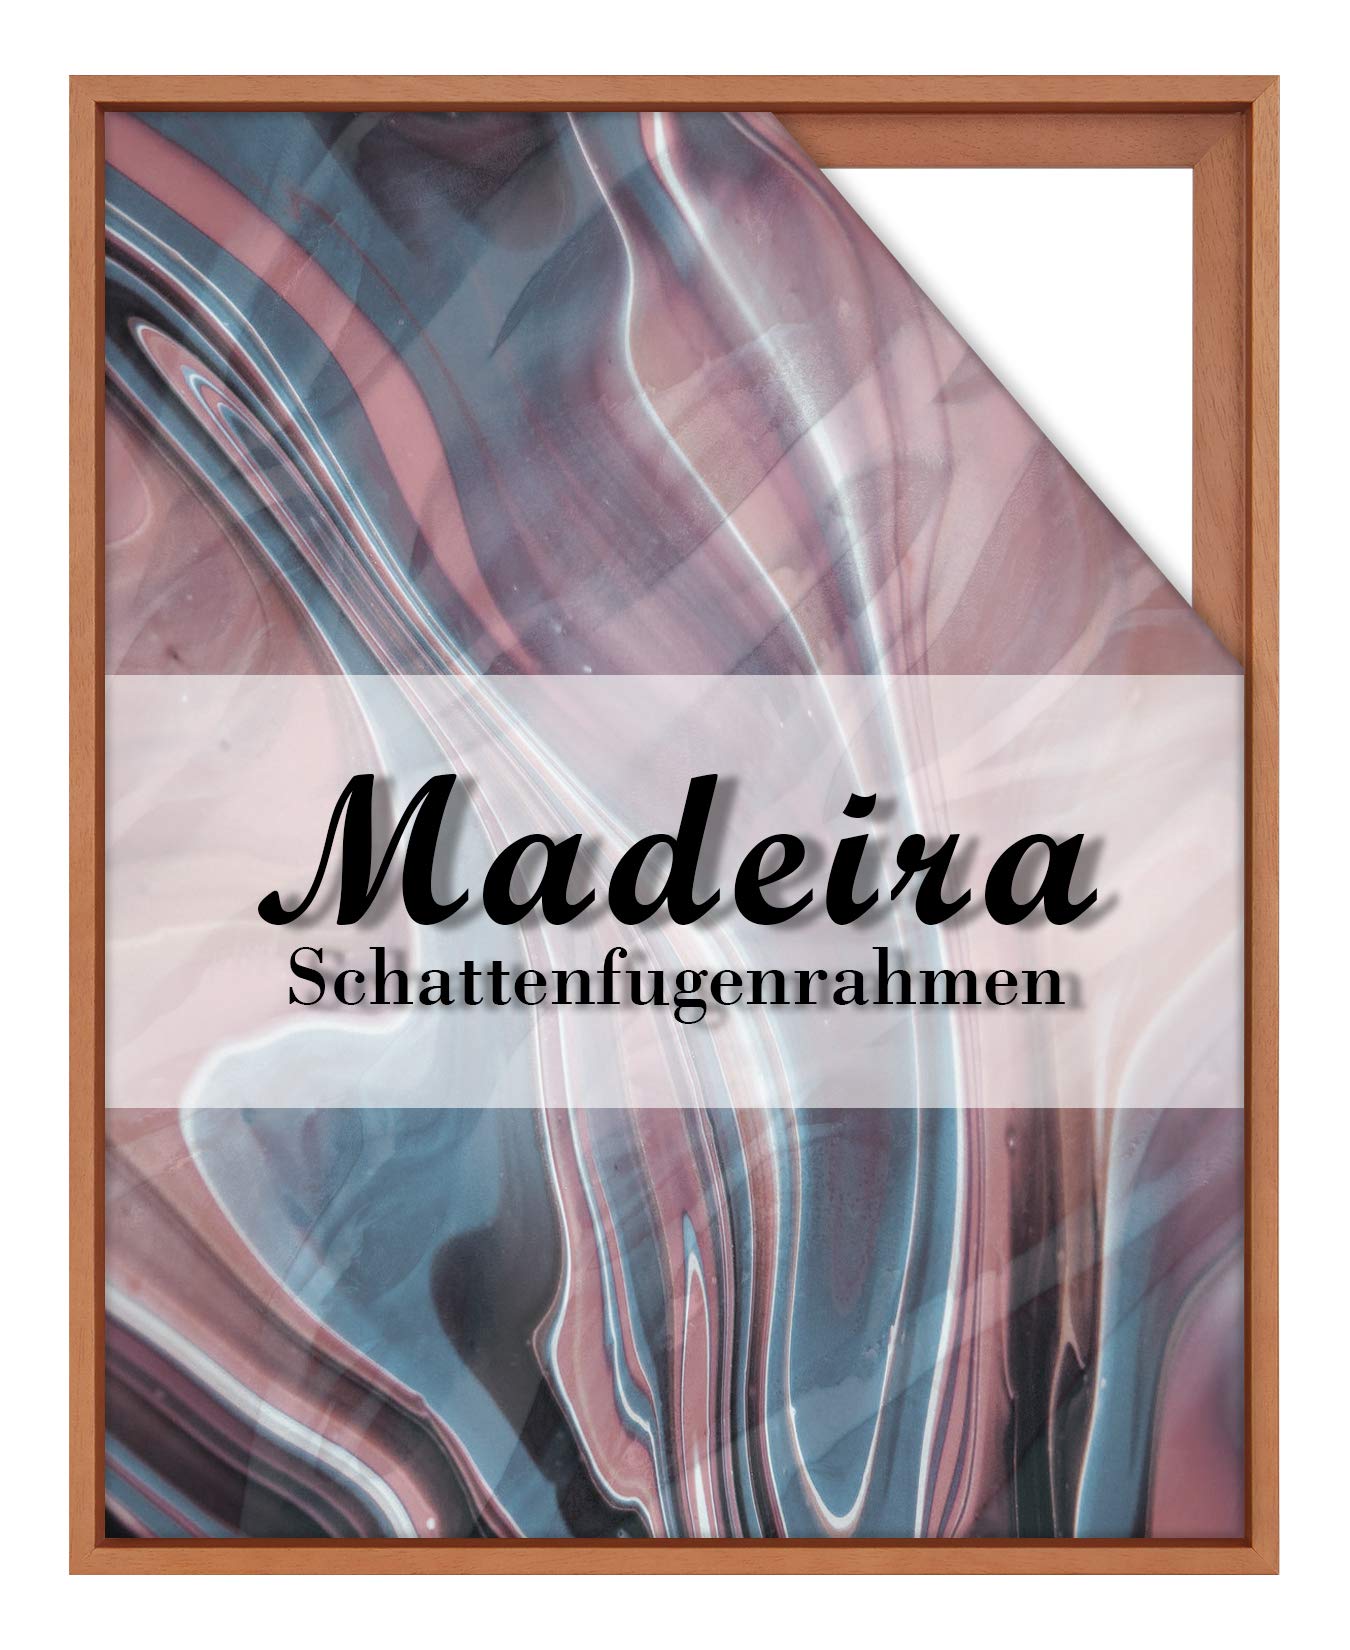 BIRAPA Madeira Schattenfugenrahmen für Leinwand 45x45 cm in Terracotta, Holzrahmen, Rahmen für Leinwände, Leerrahmen für Leinwand, Schattenfugenrahmen für Keilrahmen